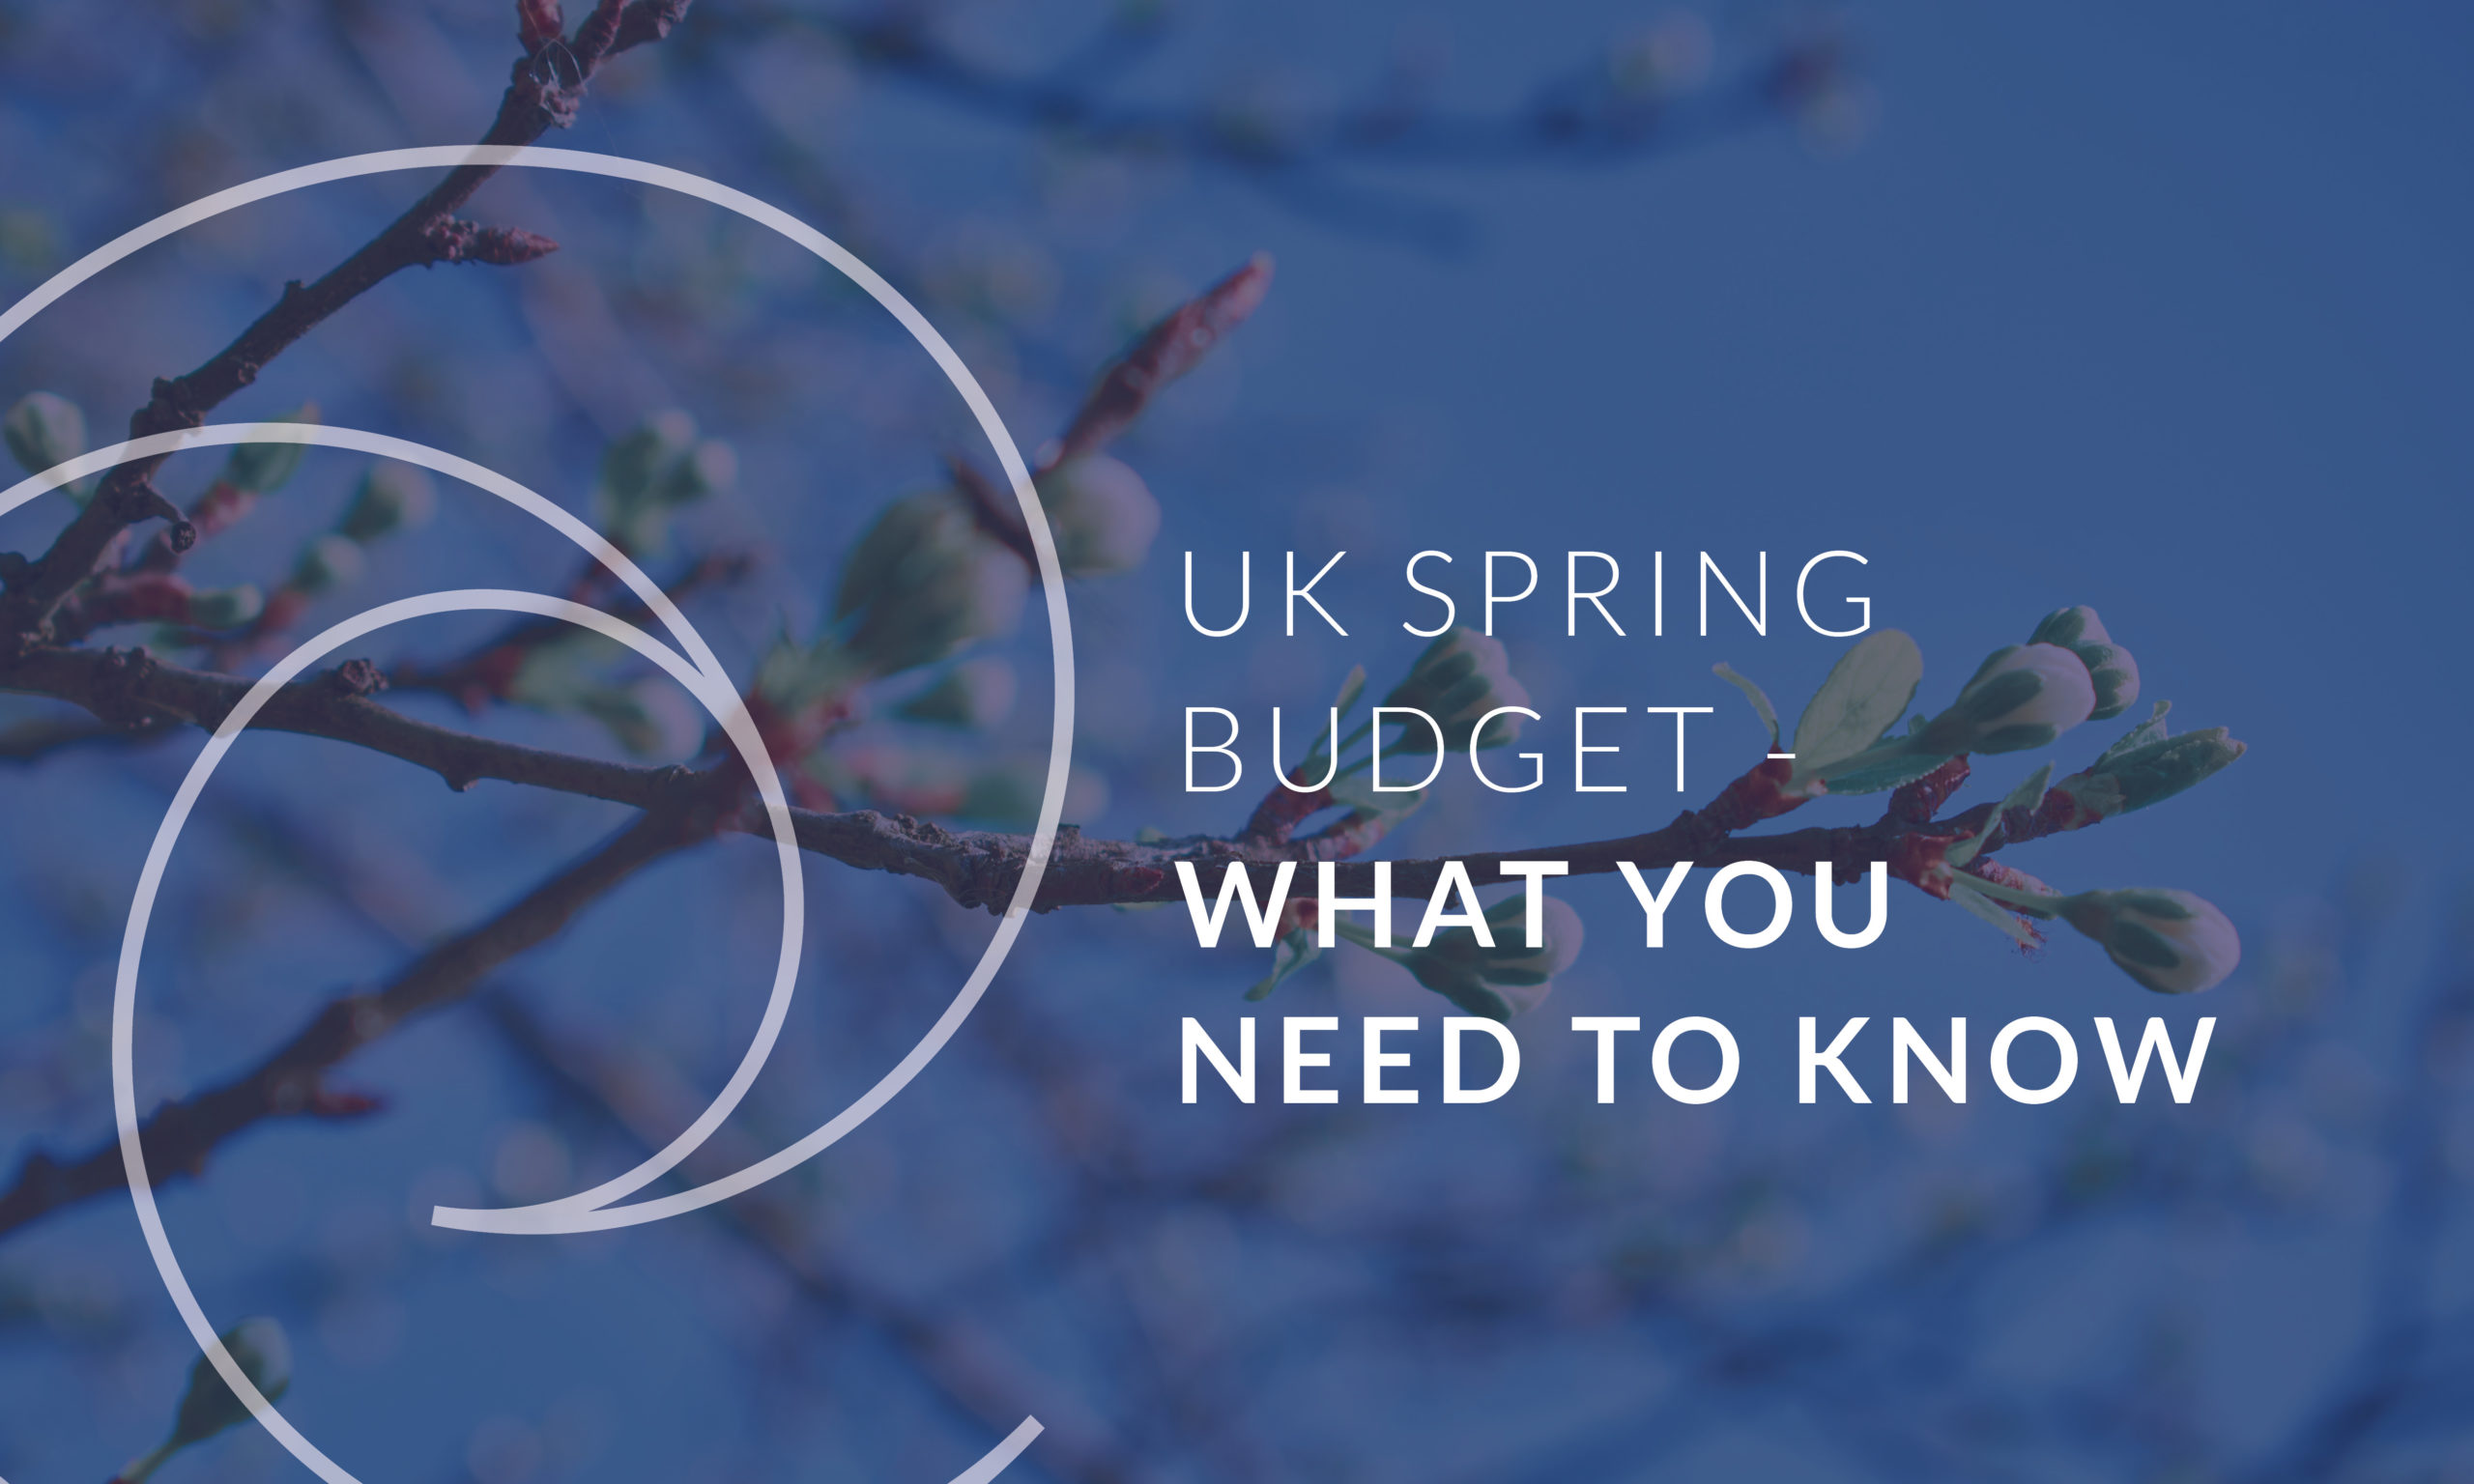 UK Spring Budget 2022